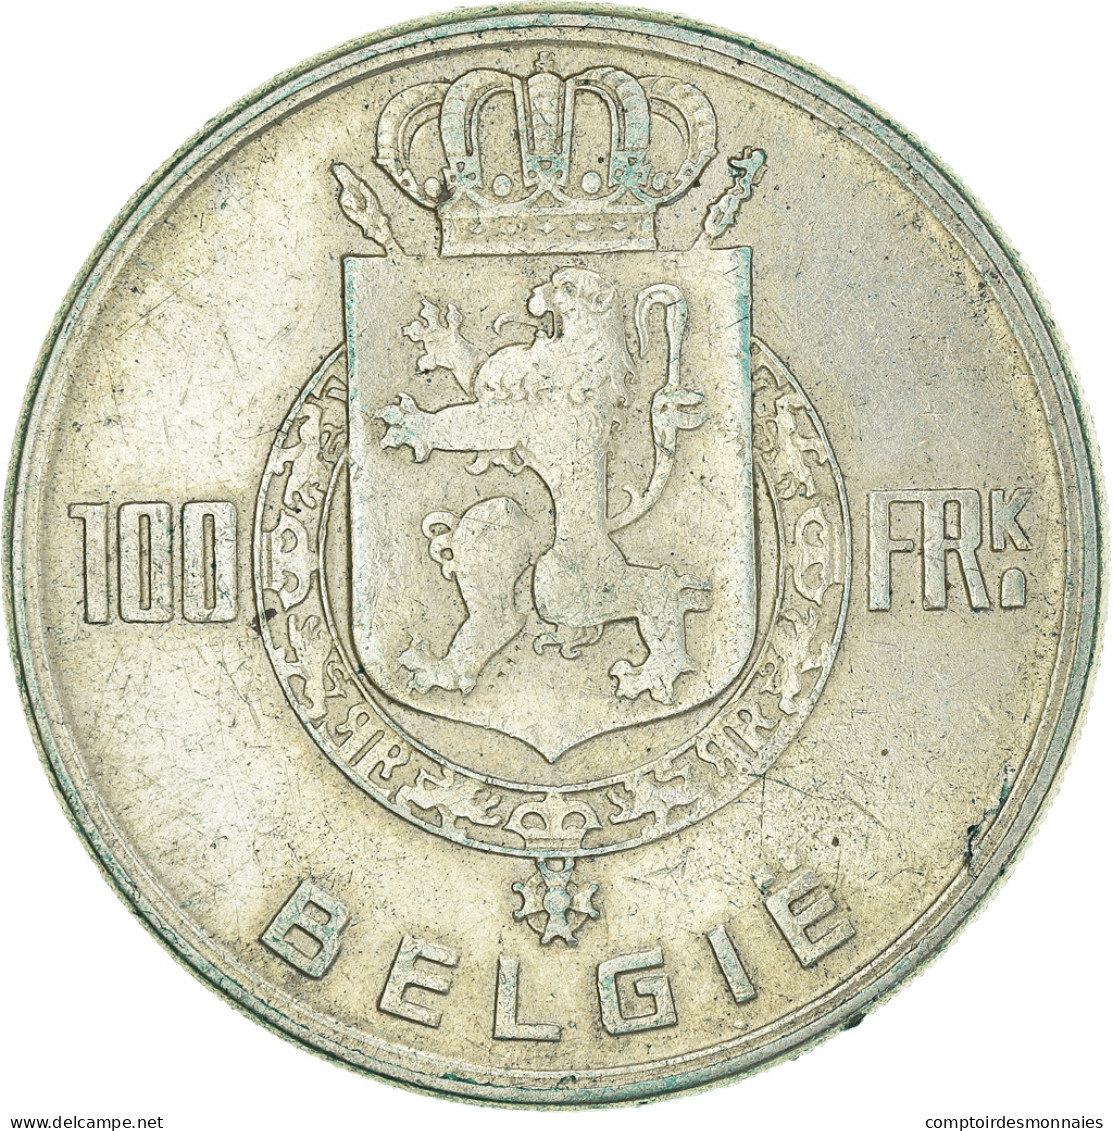 Monnaie, Belgique, 100 Francs, 100 Frank, 1951, TTB, Argent, KM:139.1 - 100 Francs